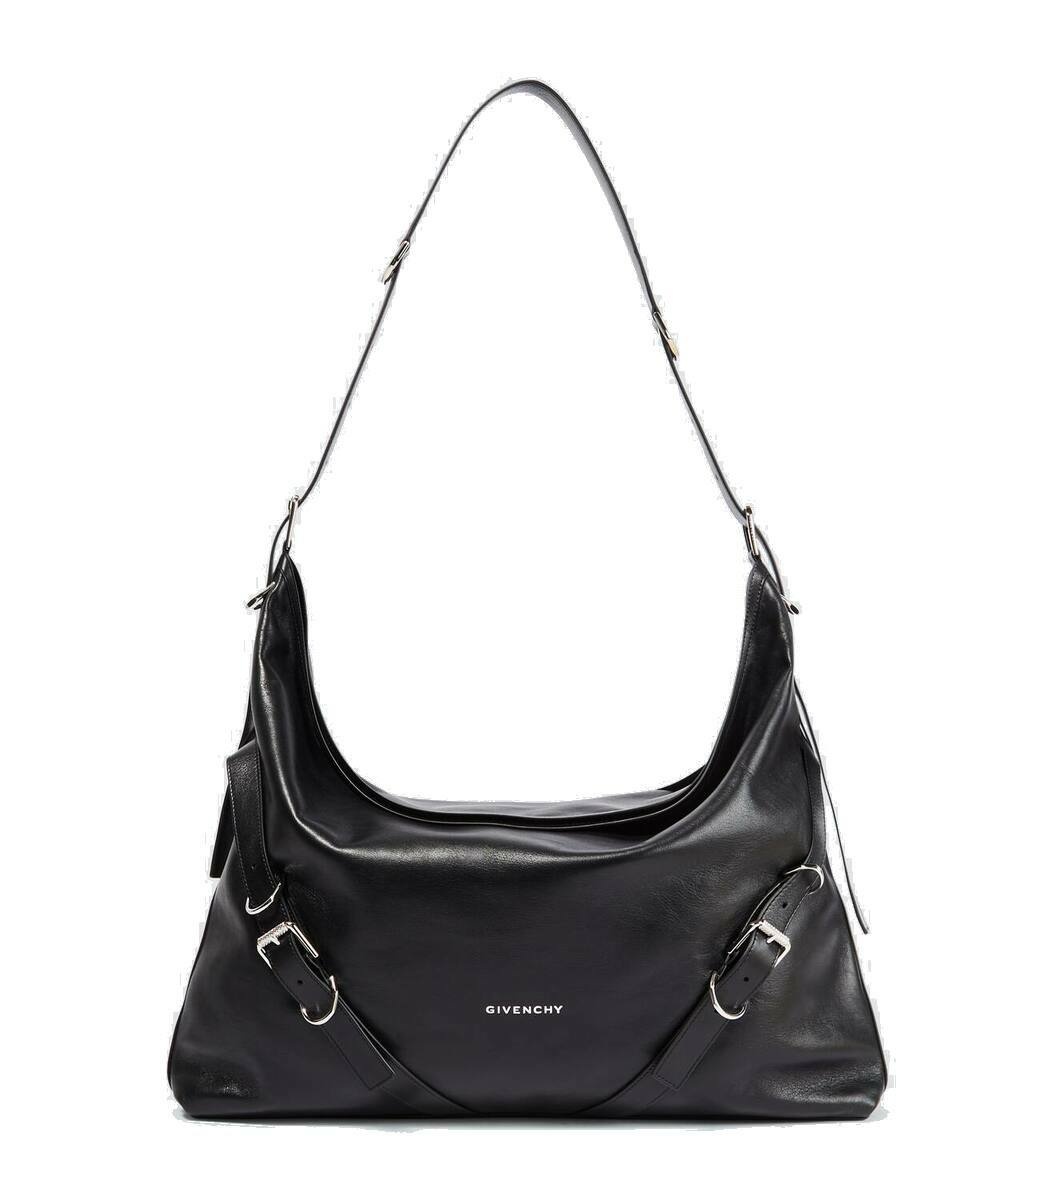 Photo: Givenchy Voyou Large leather shoulder bag